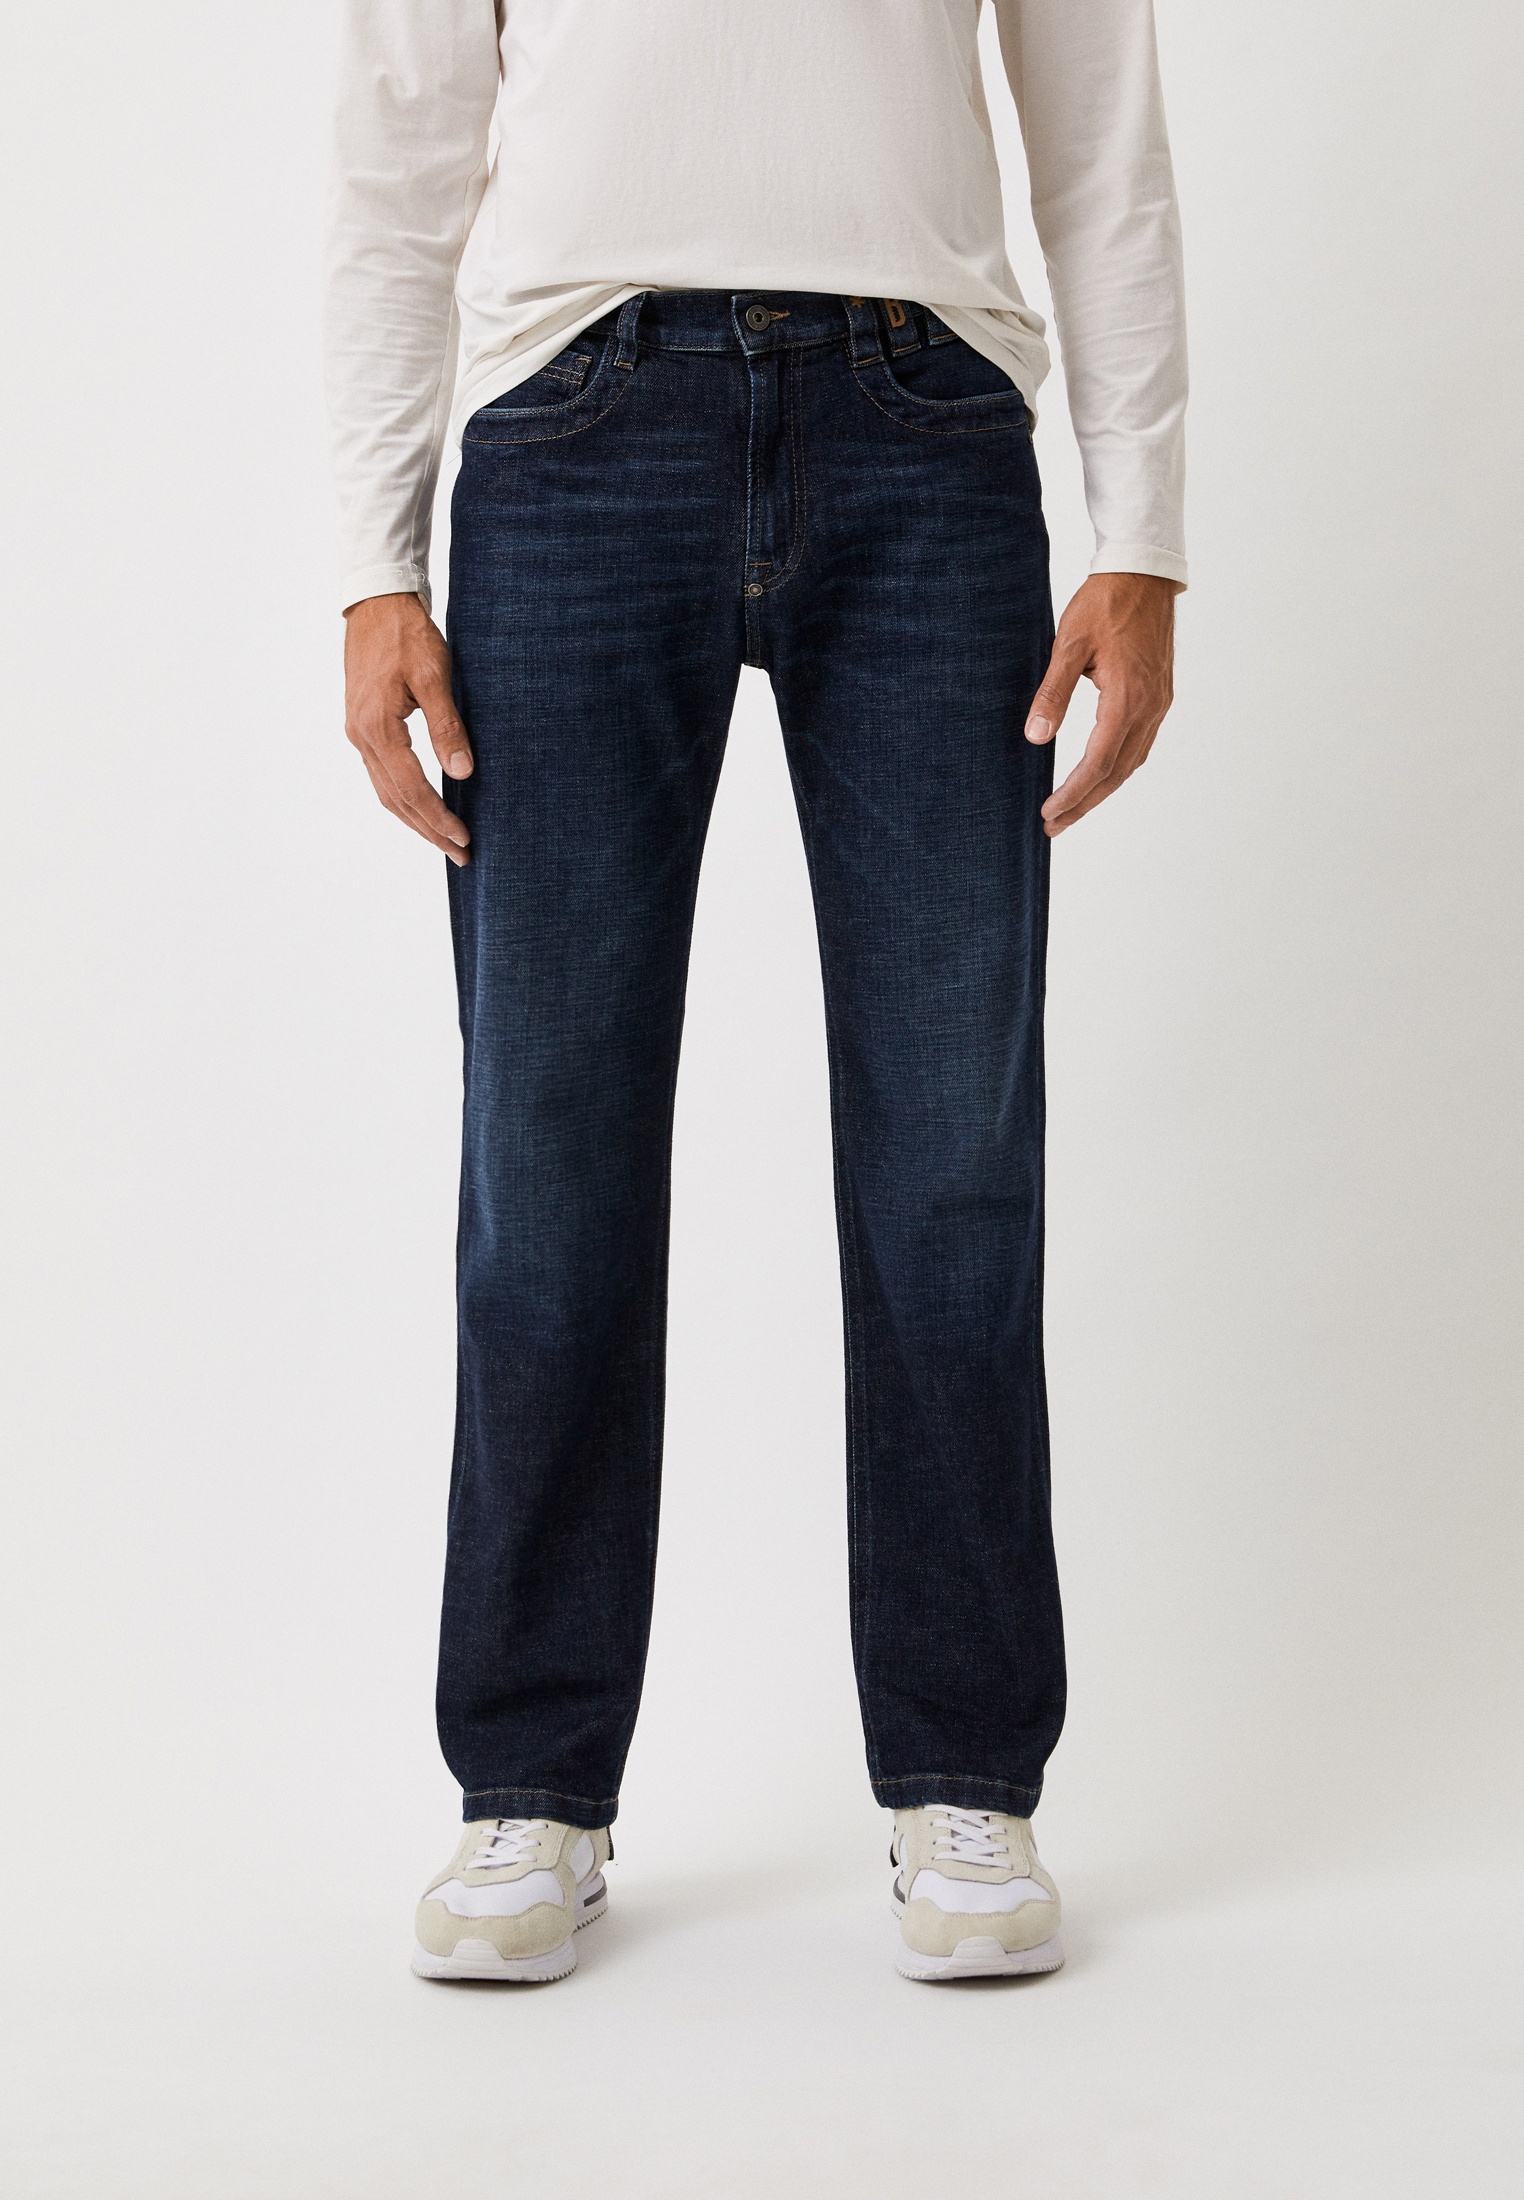 Мужские прямые джинсы Bikkembergs (Биккембергс) C Q 113 80 S 3670: изображение 1